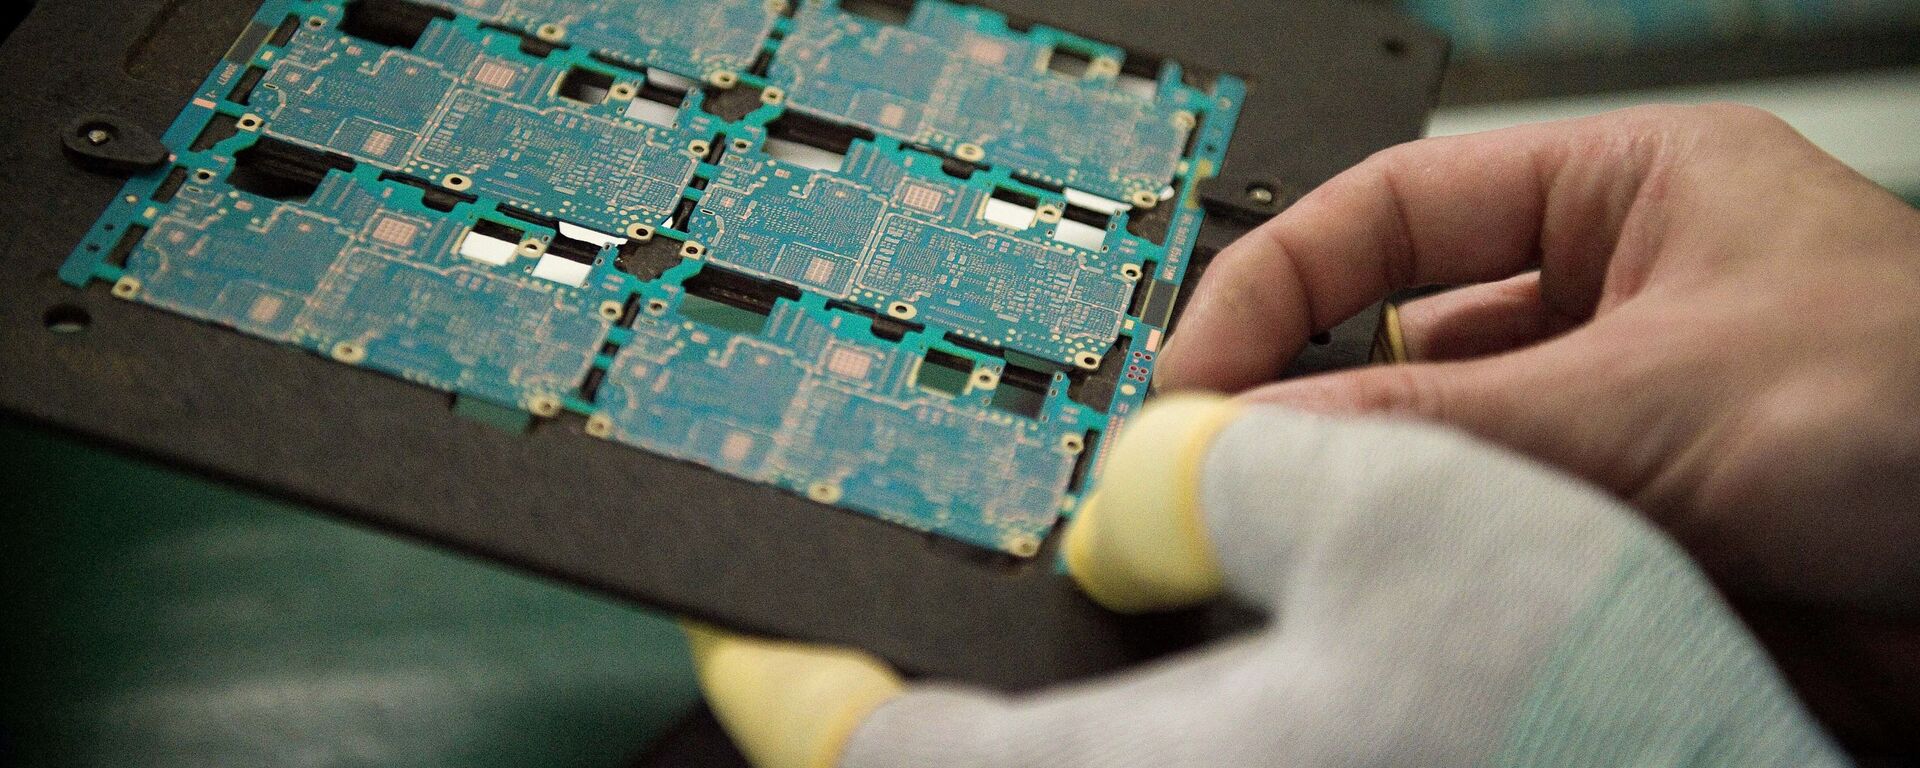 Sơ đồ các thành phần trong chip điện thoại thông minh được công nhân xử lý tại nhà máy Oppo ở Đông Quan, Trung Quốc. - Sputnik Việt Nam, 1920, 15.10.2021